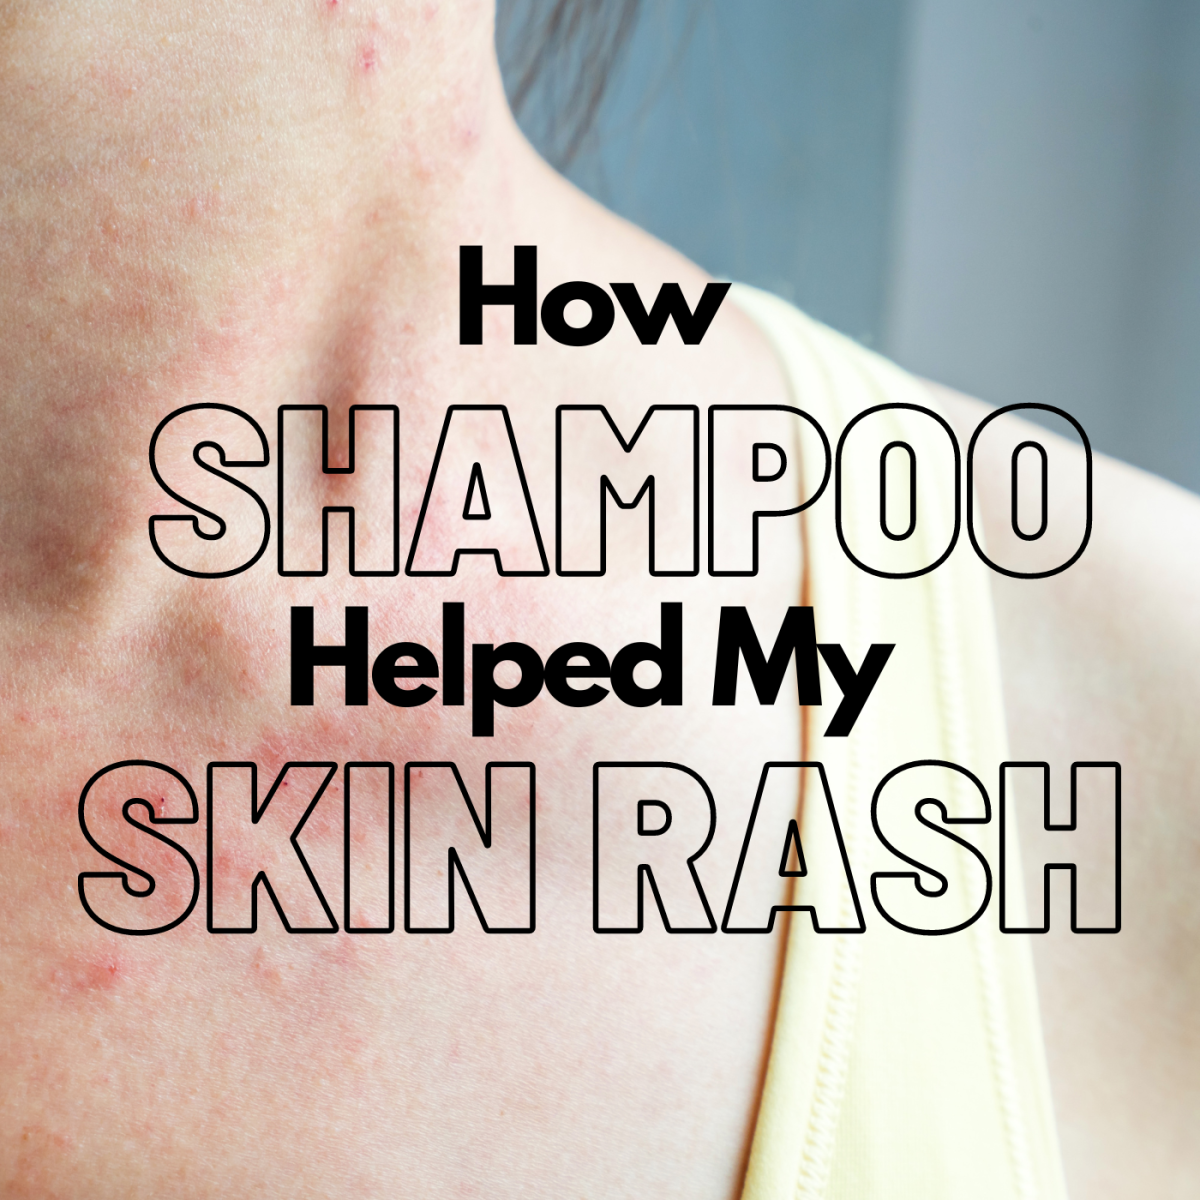 How Selsun Blue helped my skin rash